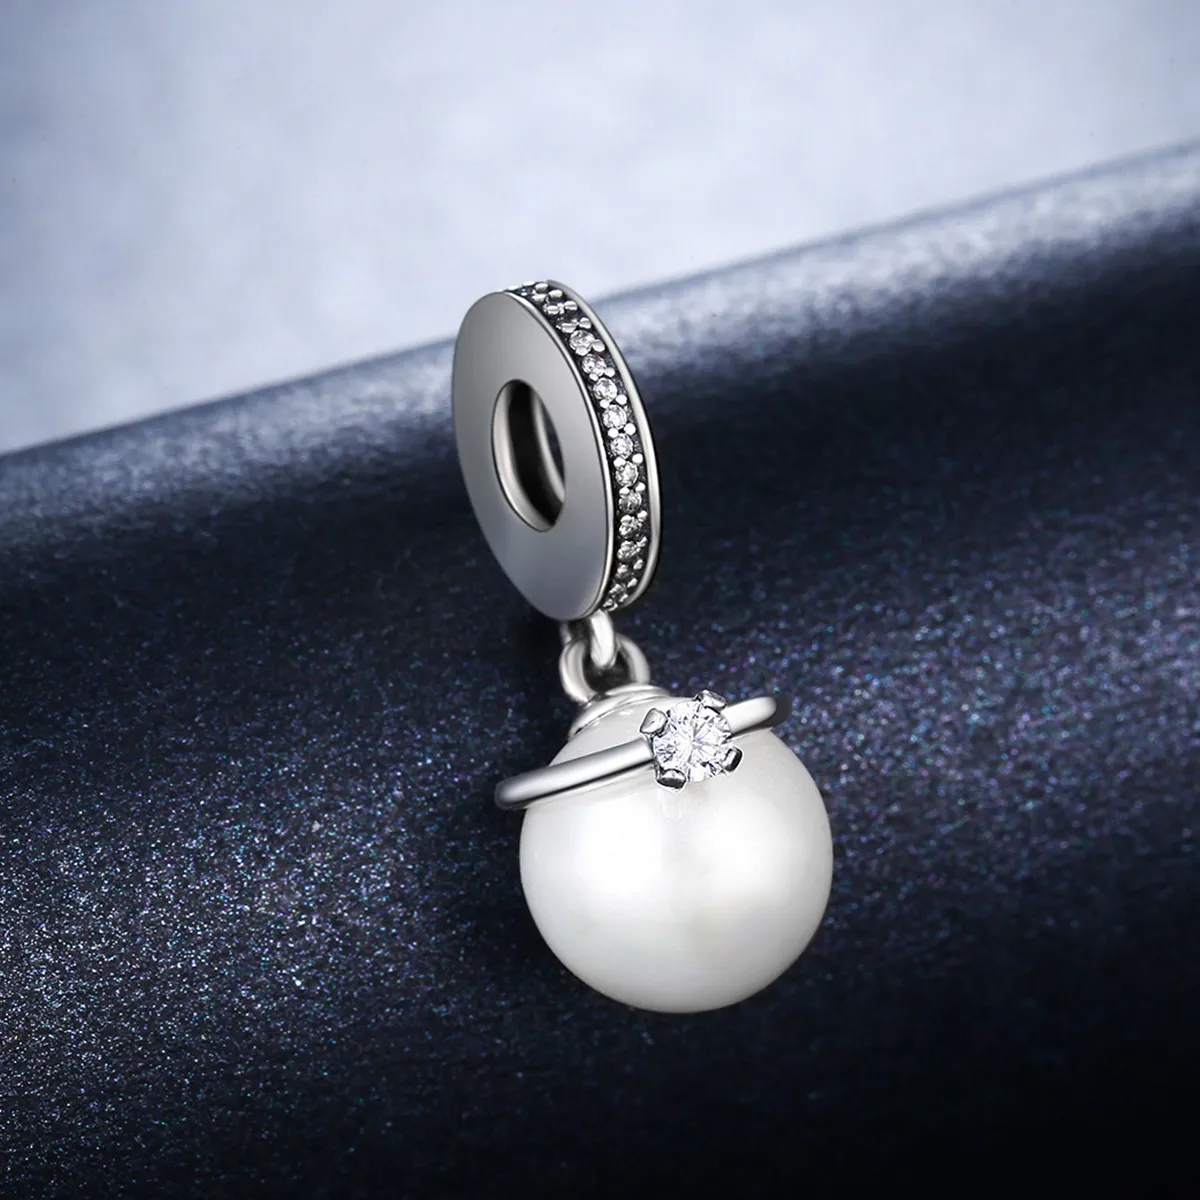 Talisman pandantiv Tip Pandora cu Perle elegante din argint - SCC137